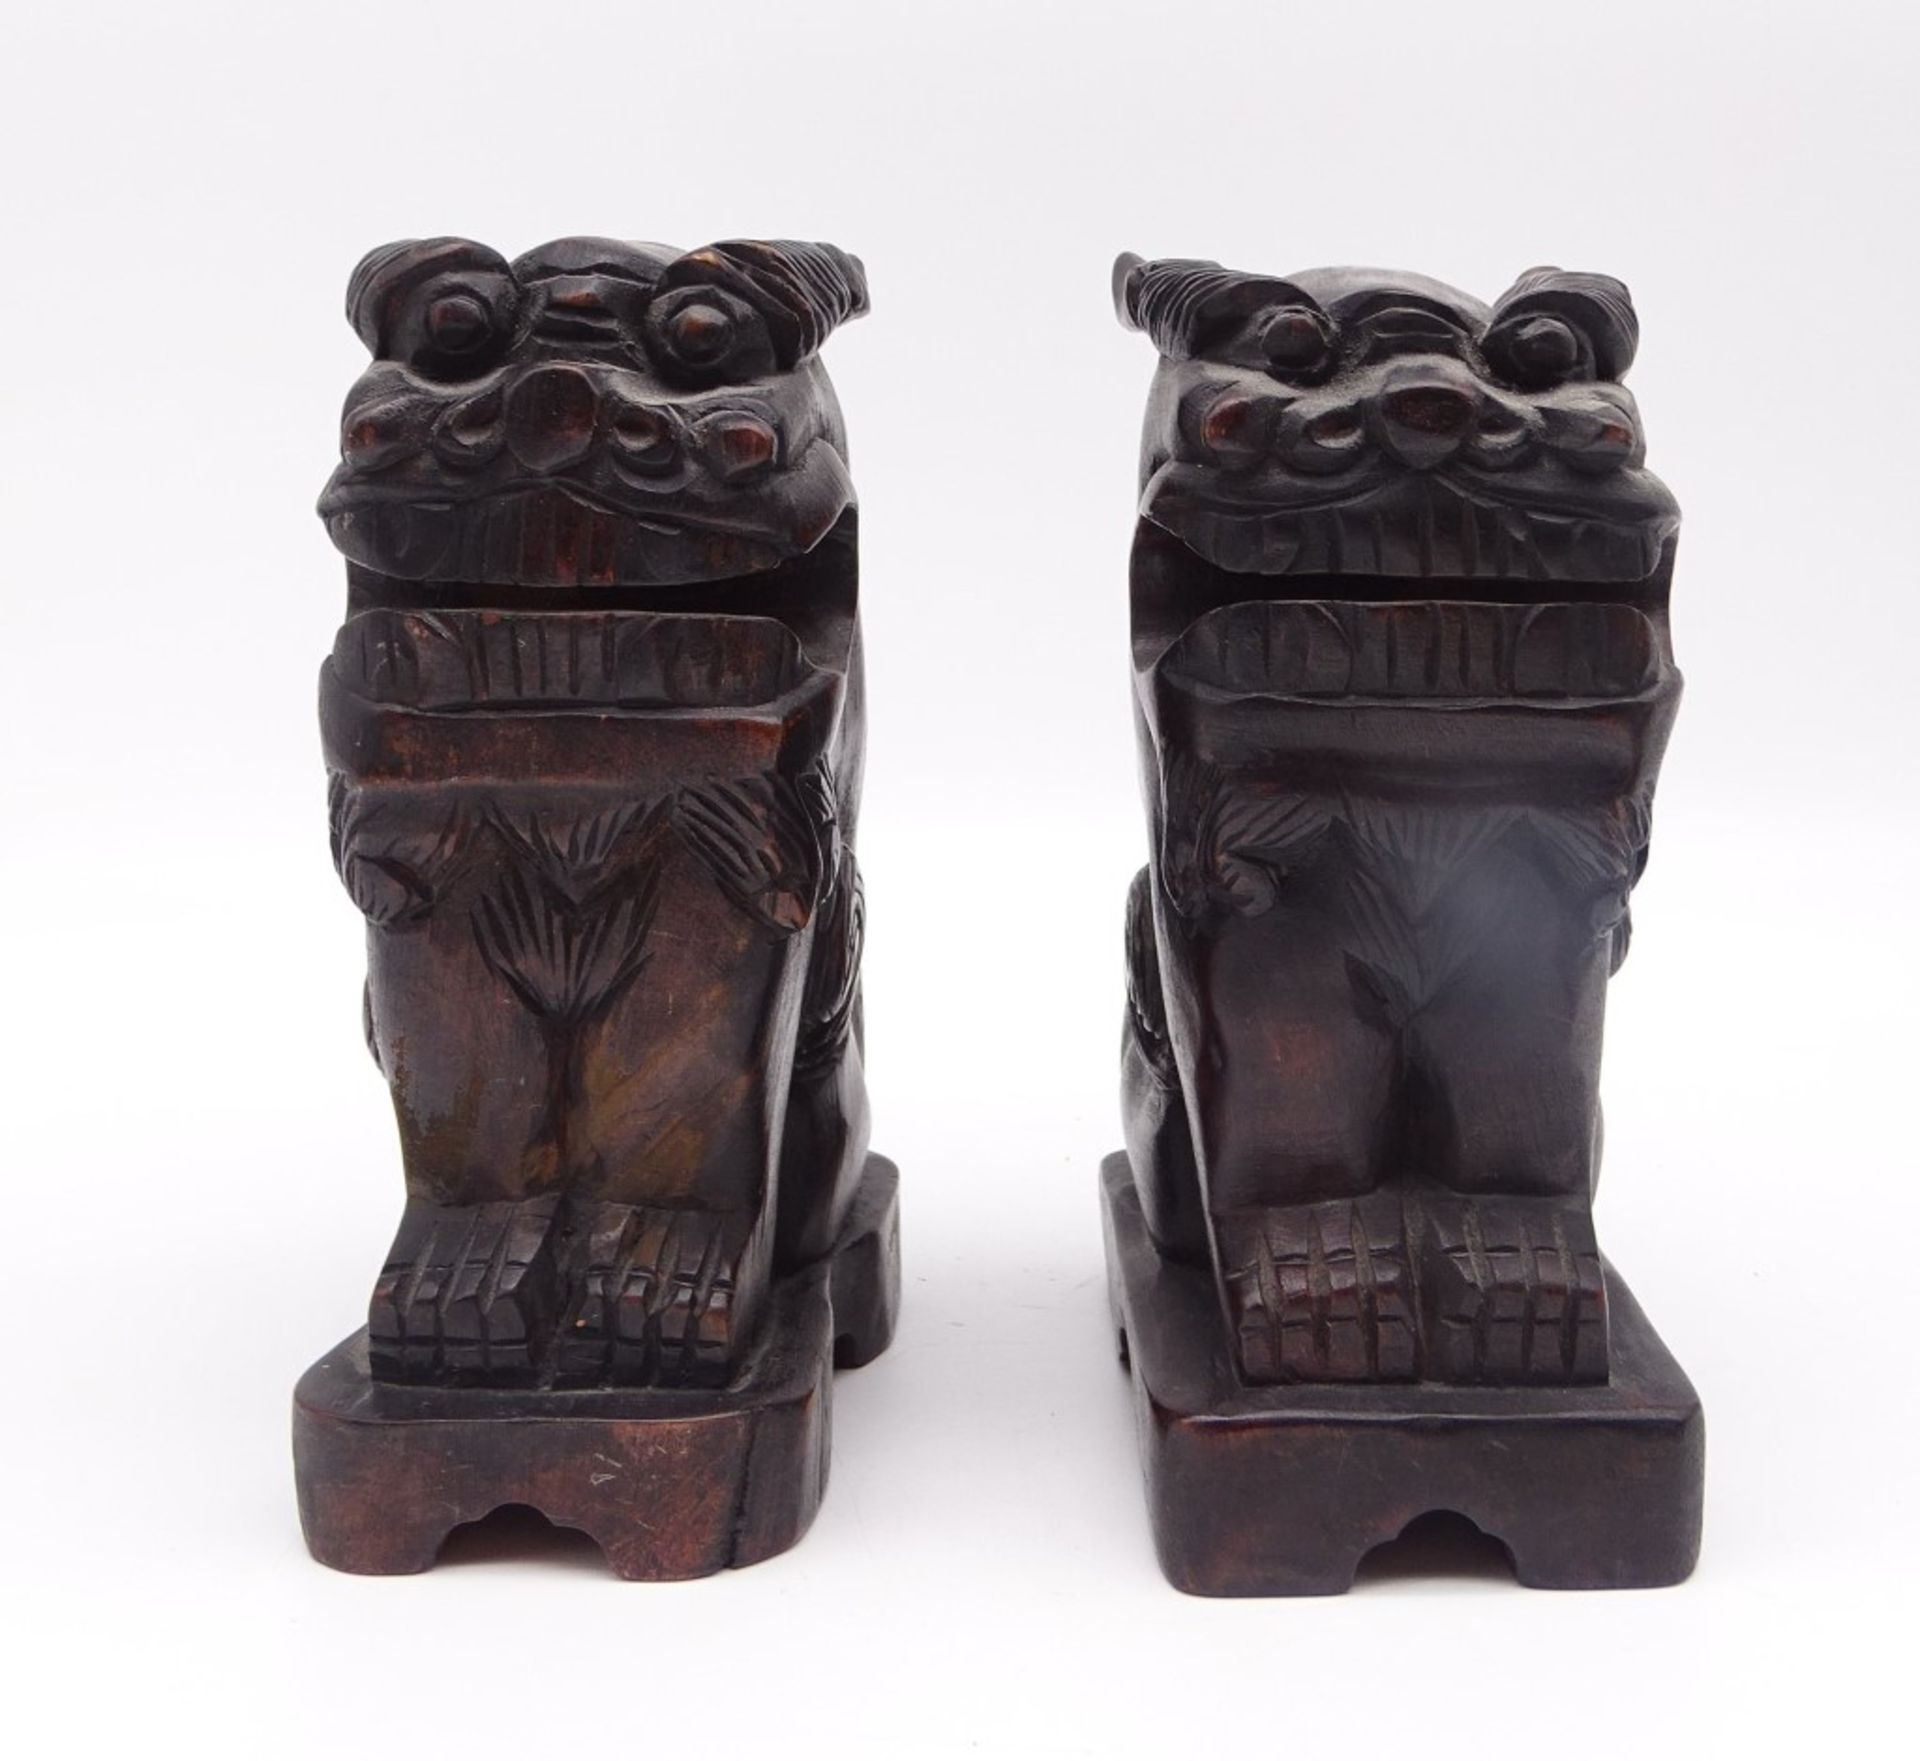 2 Fu-Hunde/ Wächterlöwen aus Holz geschnitzt, ca. 18 x 11 x 7,5 cm, leicht reinigungsbedürftig